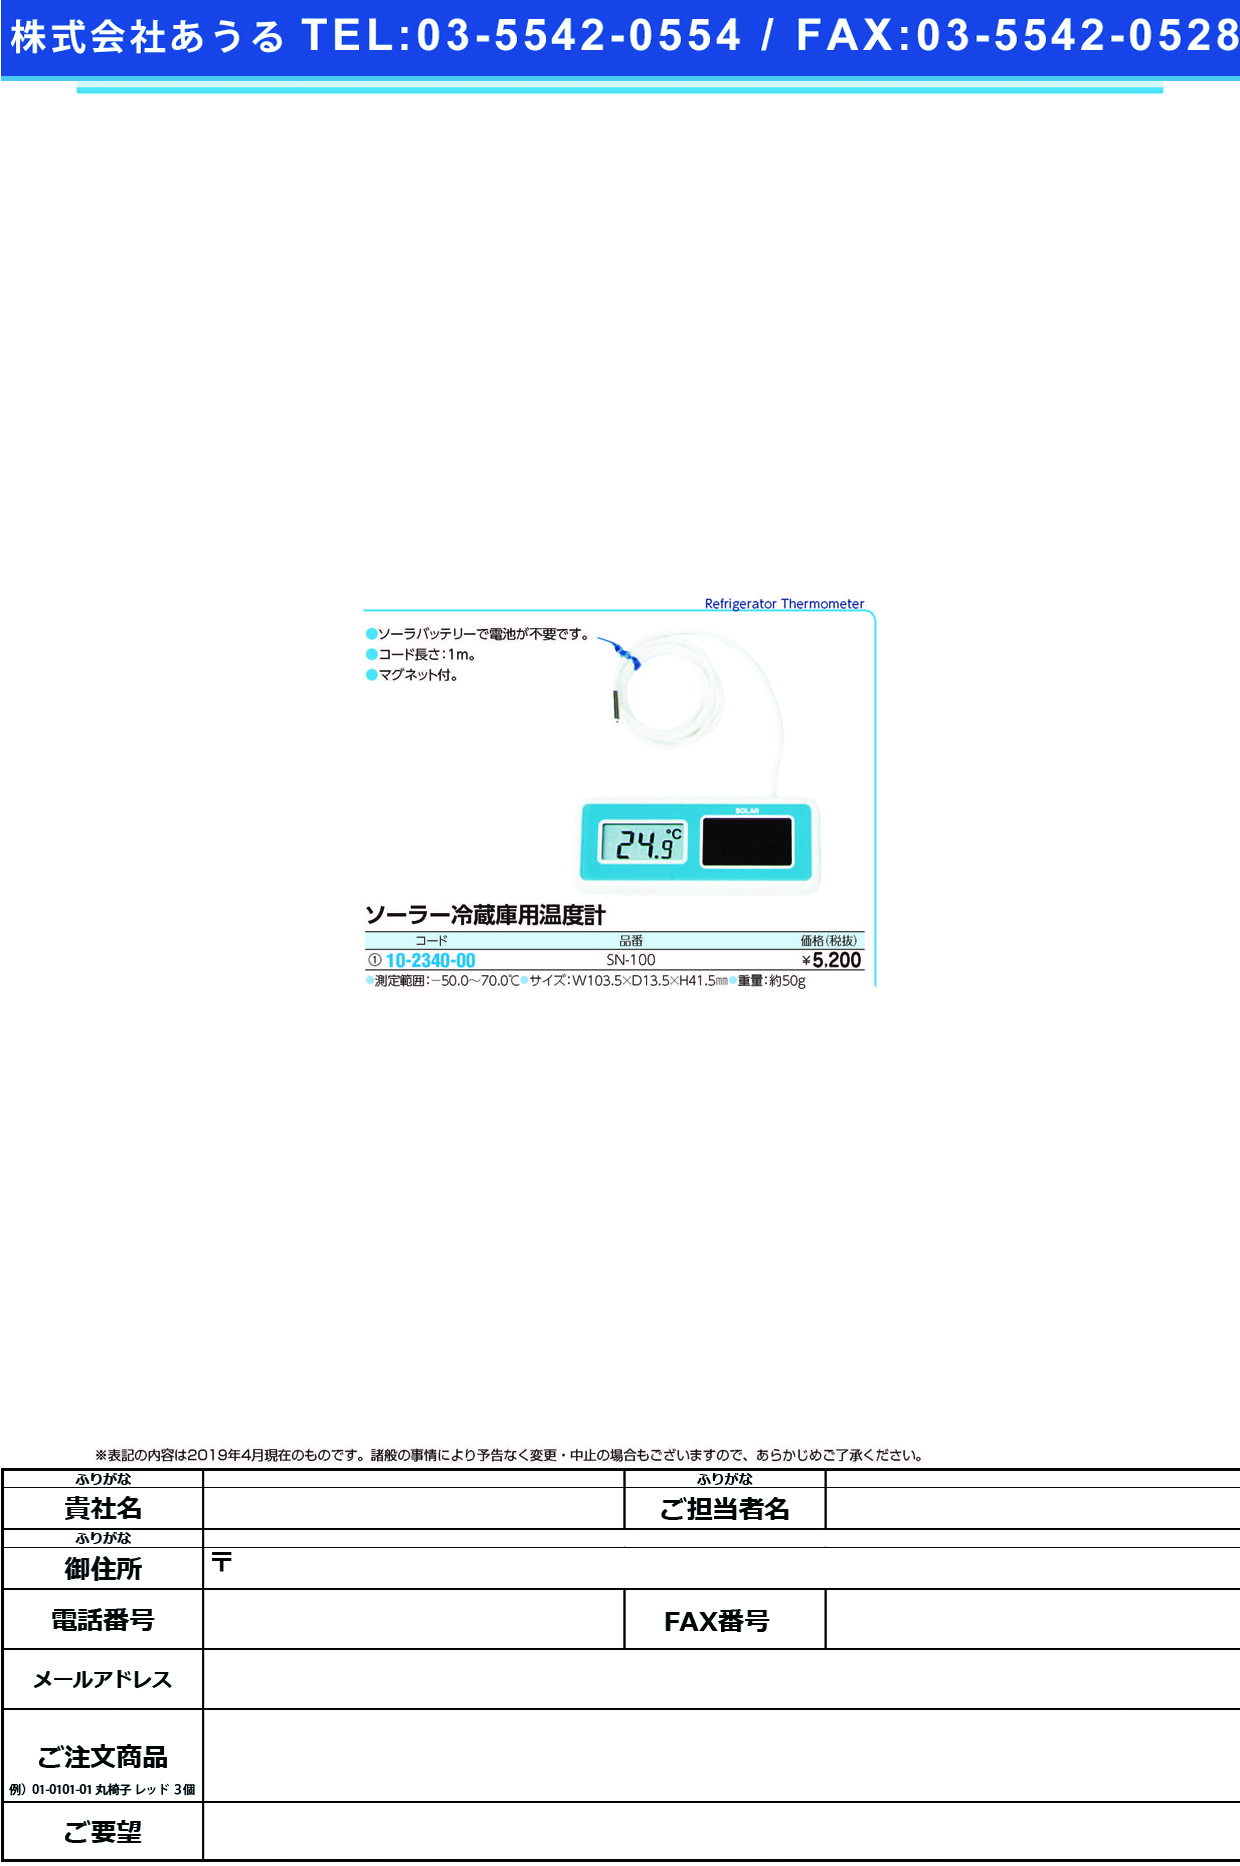 (10-2340-00)デジタル冷蔵庫用温度計（ソーラー） SN-100(-50ｶﾗ70ﾟC) ﾃﾞｼﾞﾀﾙﾚｲｿﾞｳｺﾖｳｵﾝﾄﾞｹｲ【1個単位】【2019年カタログ商品】